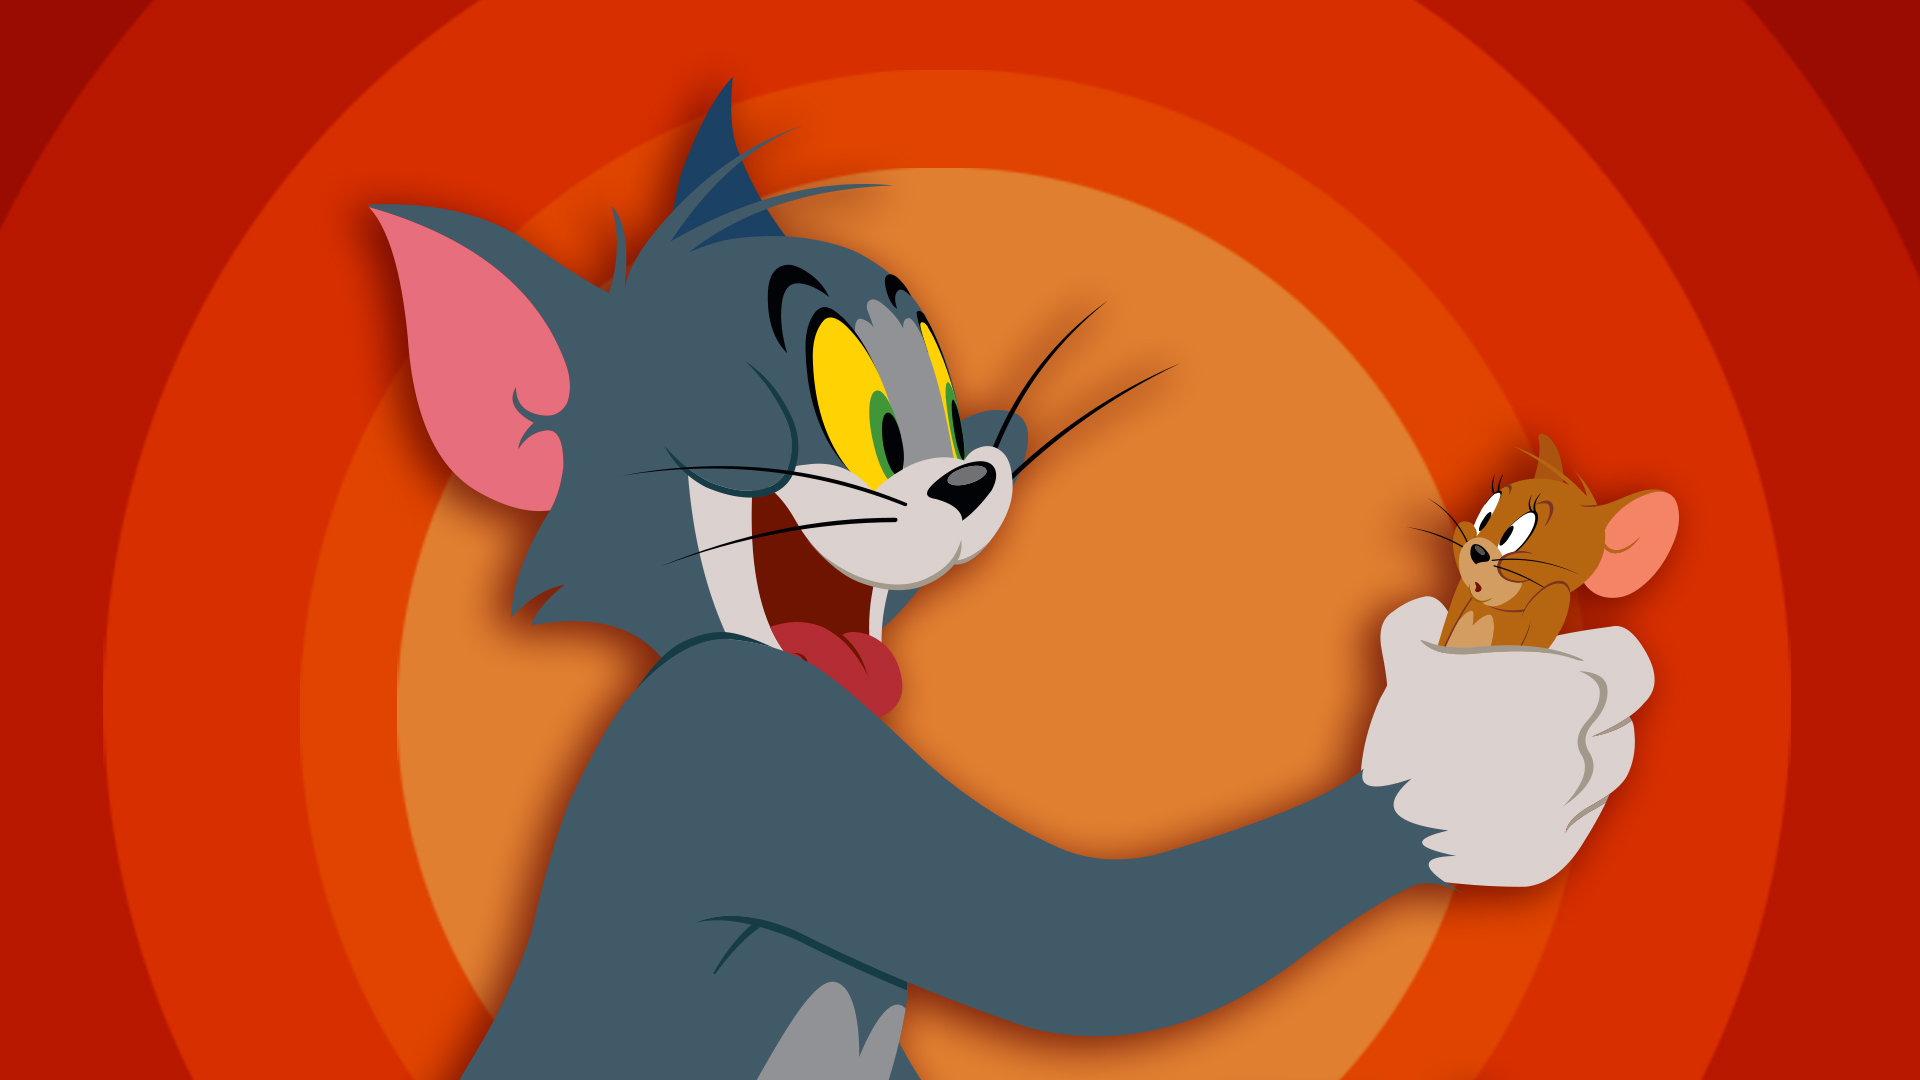 Viết 1 đoạn văn bằng tiếng Anh về bộ phim Tom and Jerry 9 Mẫu